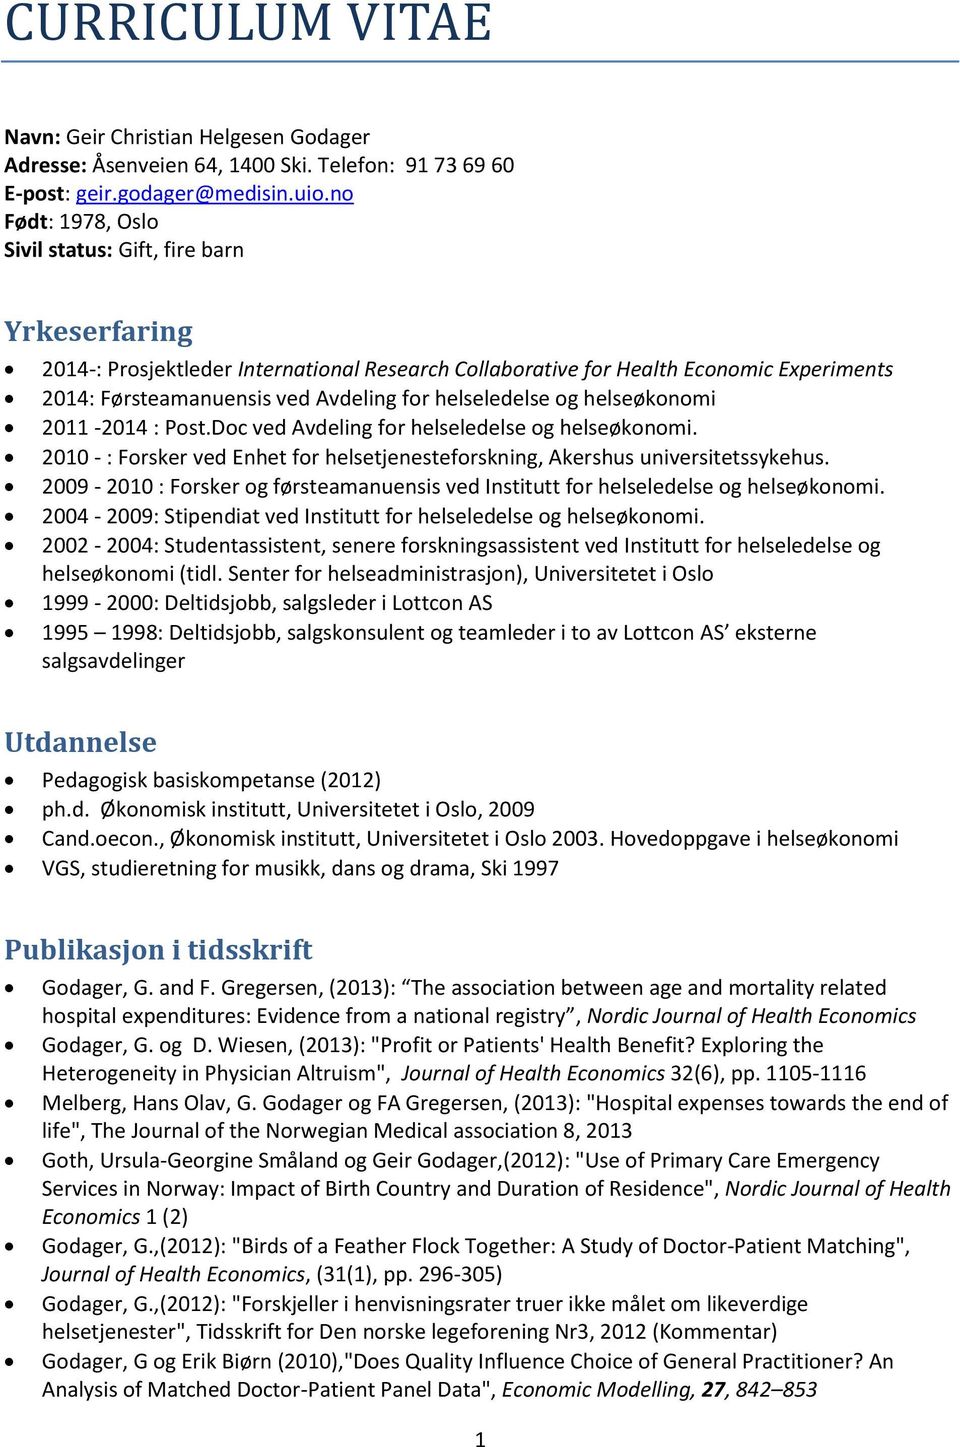 helseledelse og helseøkonomi 2011-2014 : Post.Doc ved Avdeling for helseledelse og helseøkonomi. 2010 - : Forsker ved Enhet for helsetjenesteforskning, Akershus universitetssykehus.